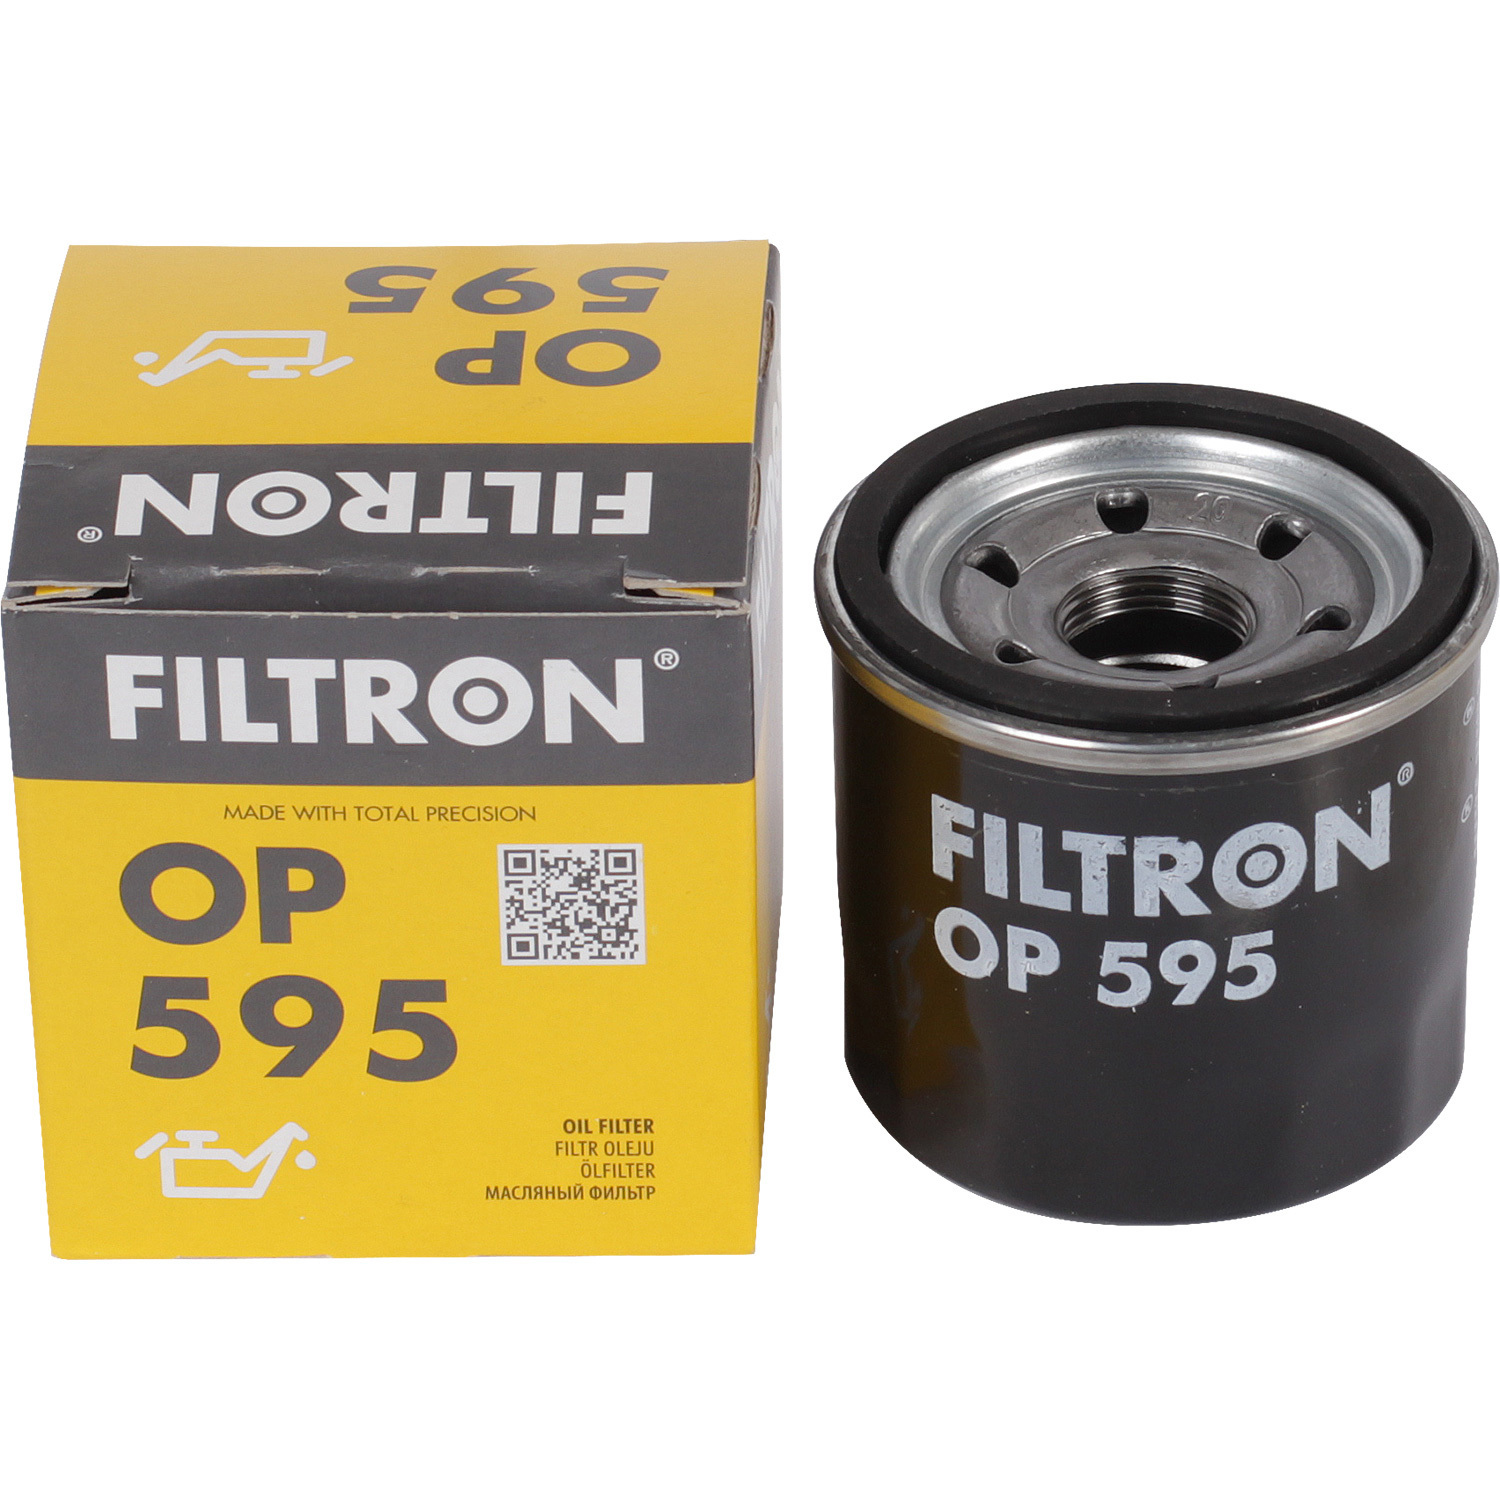 фильтры filtron фильтр масляный filtron op613 Фильтры Filtron Фильтр масляный Filtron OP595